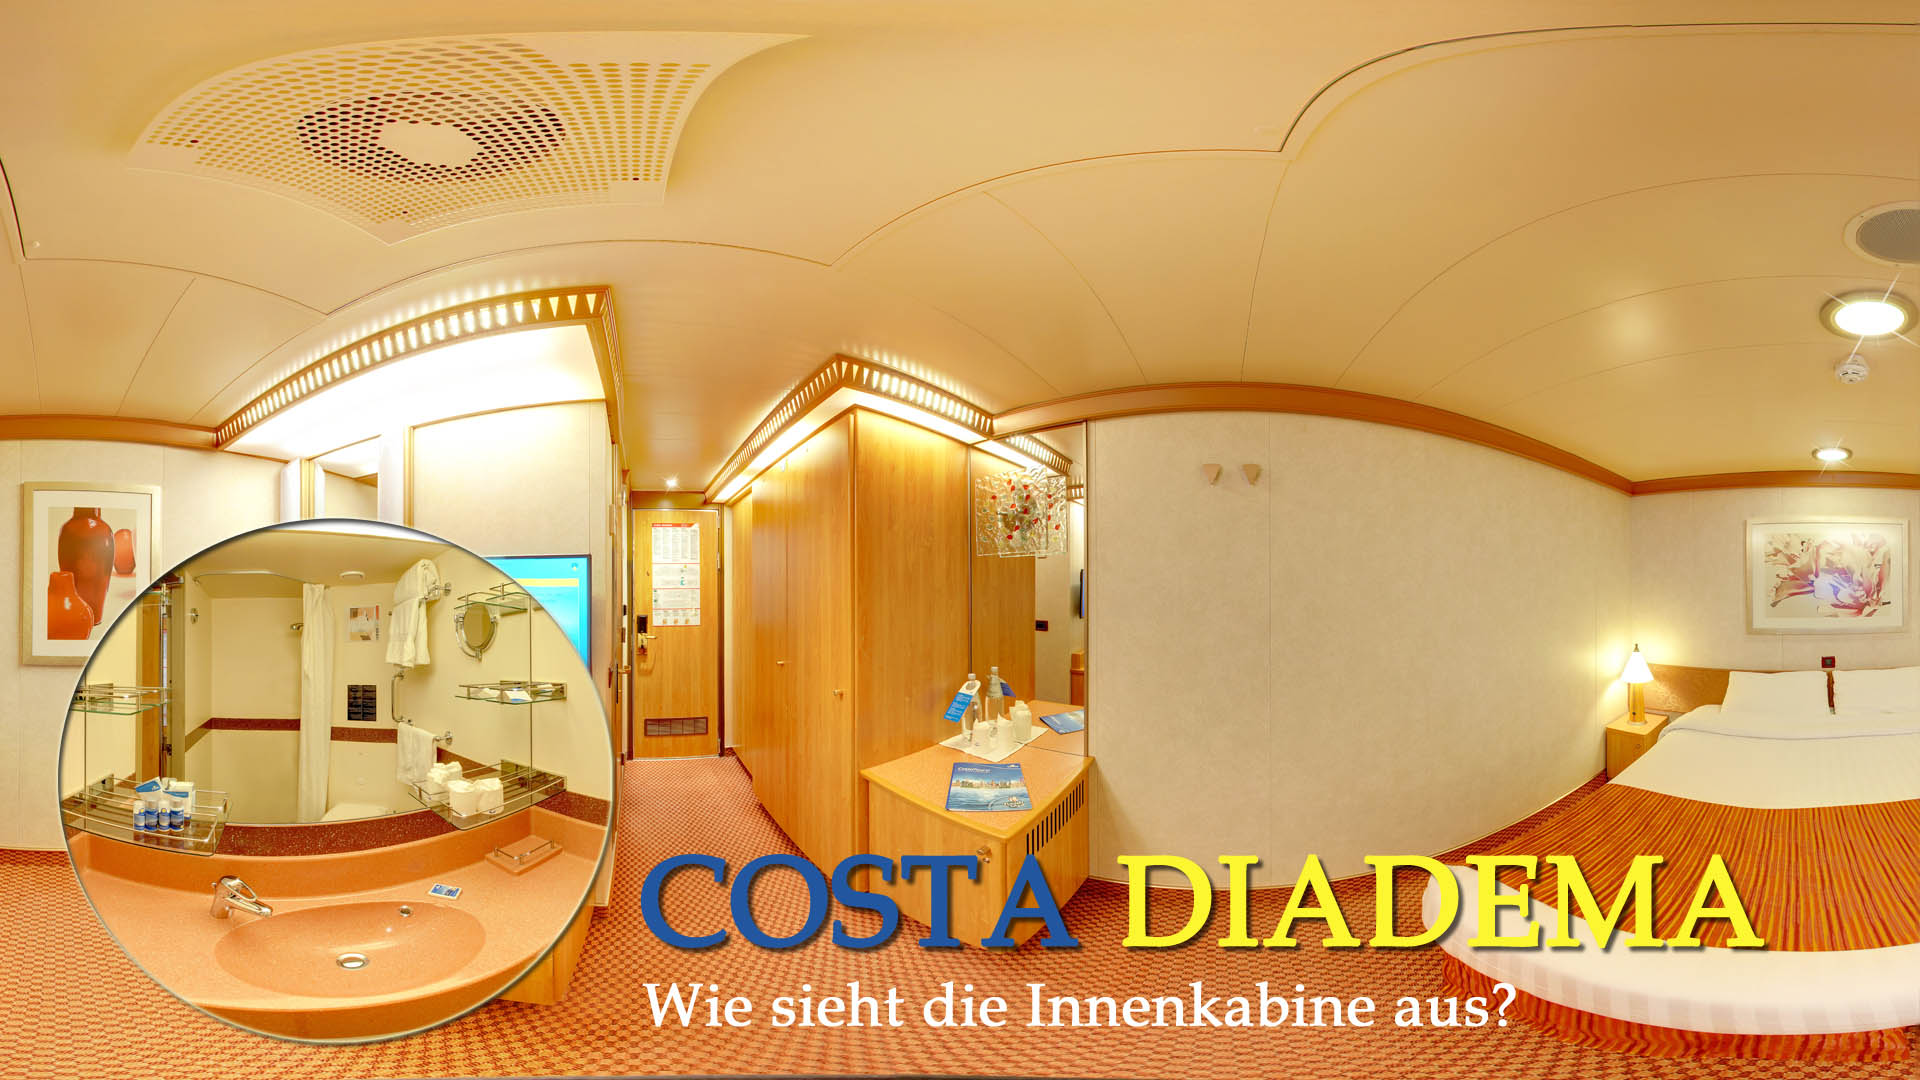 Die Innenkabine der Costa Diadema.